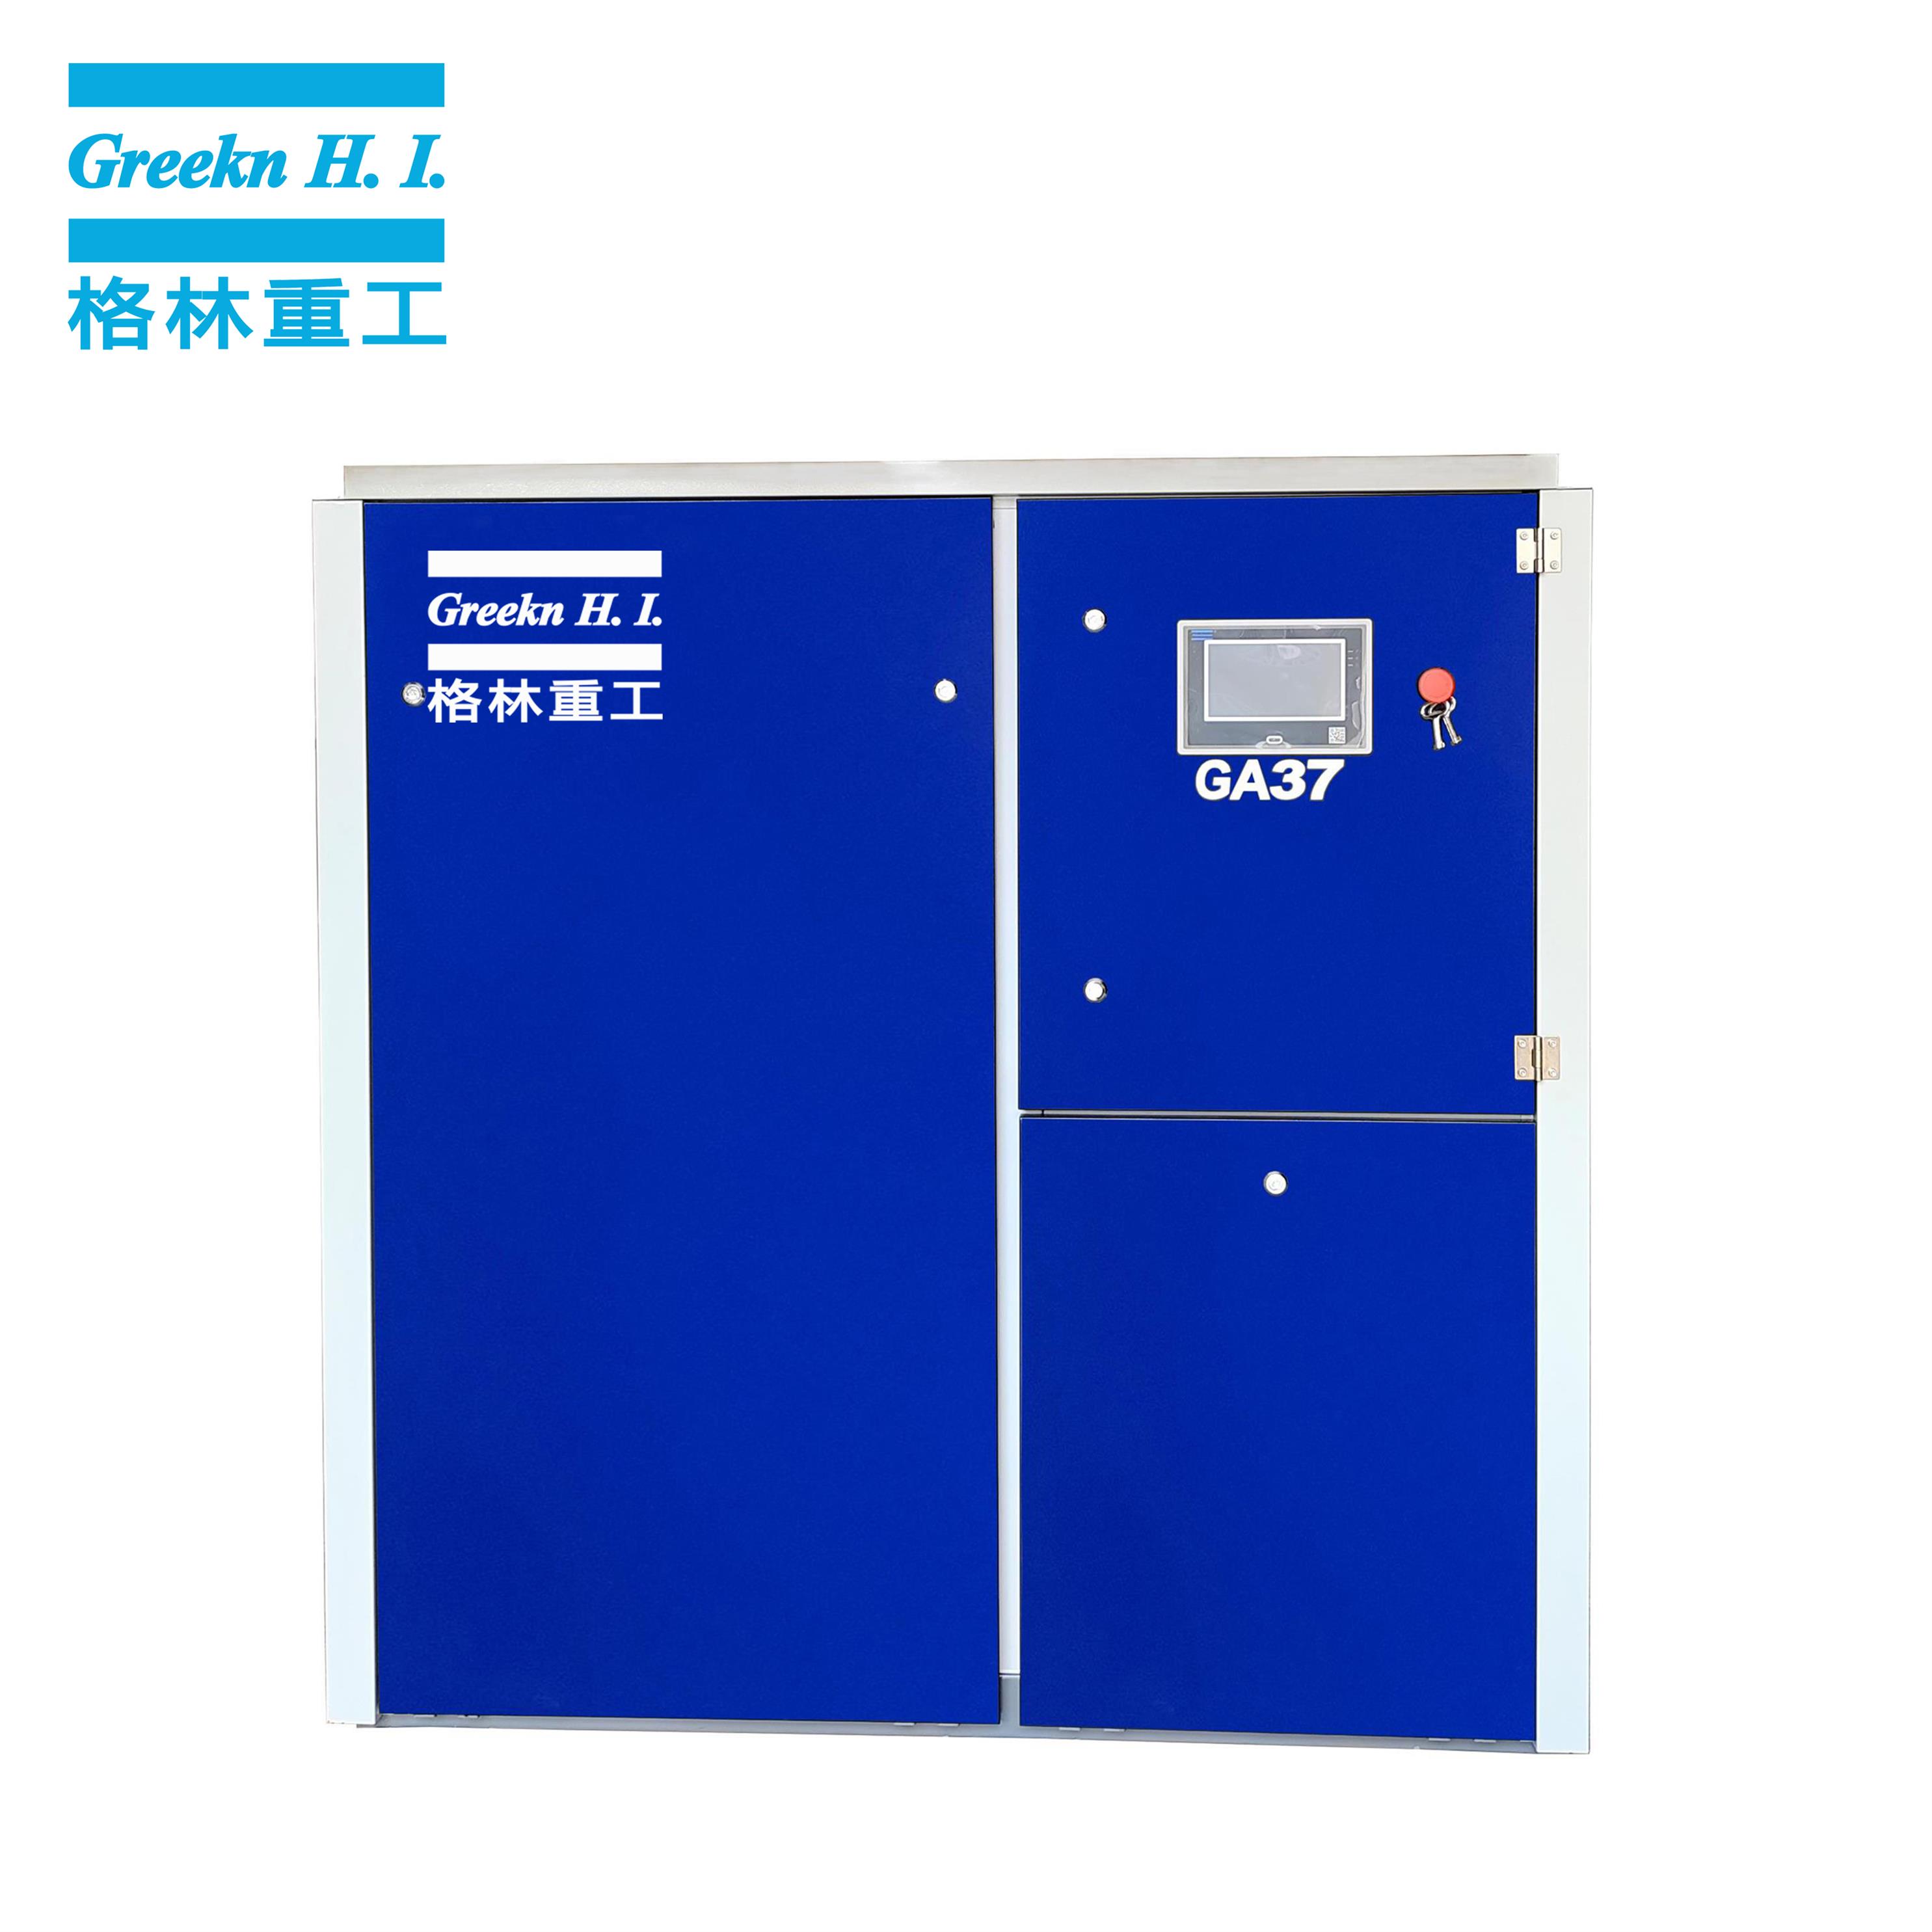 Greeknhi GA37 37kW 50HP Fixed Speed Electrical Screw Air Compressor